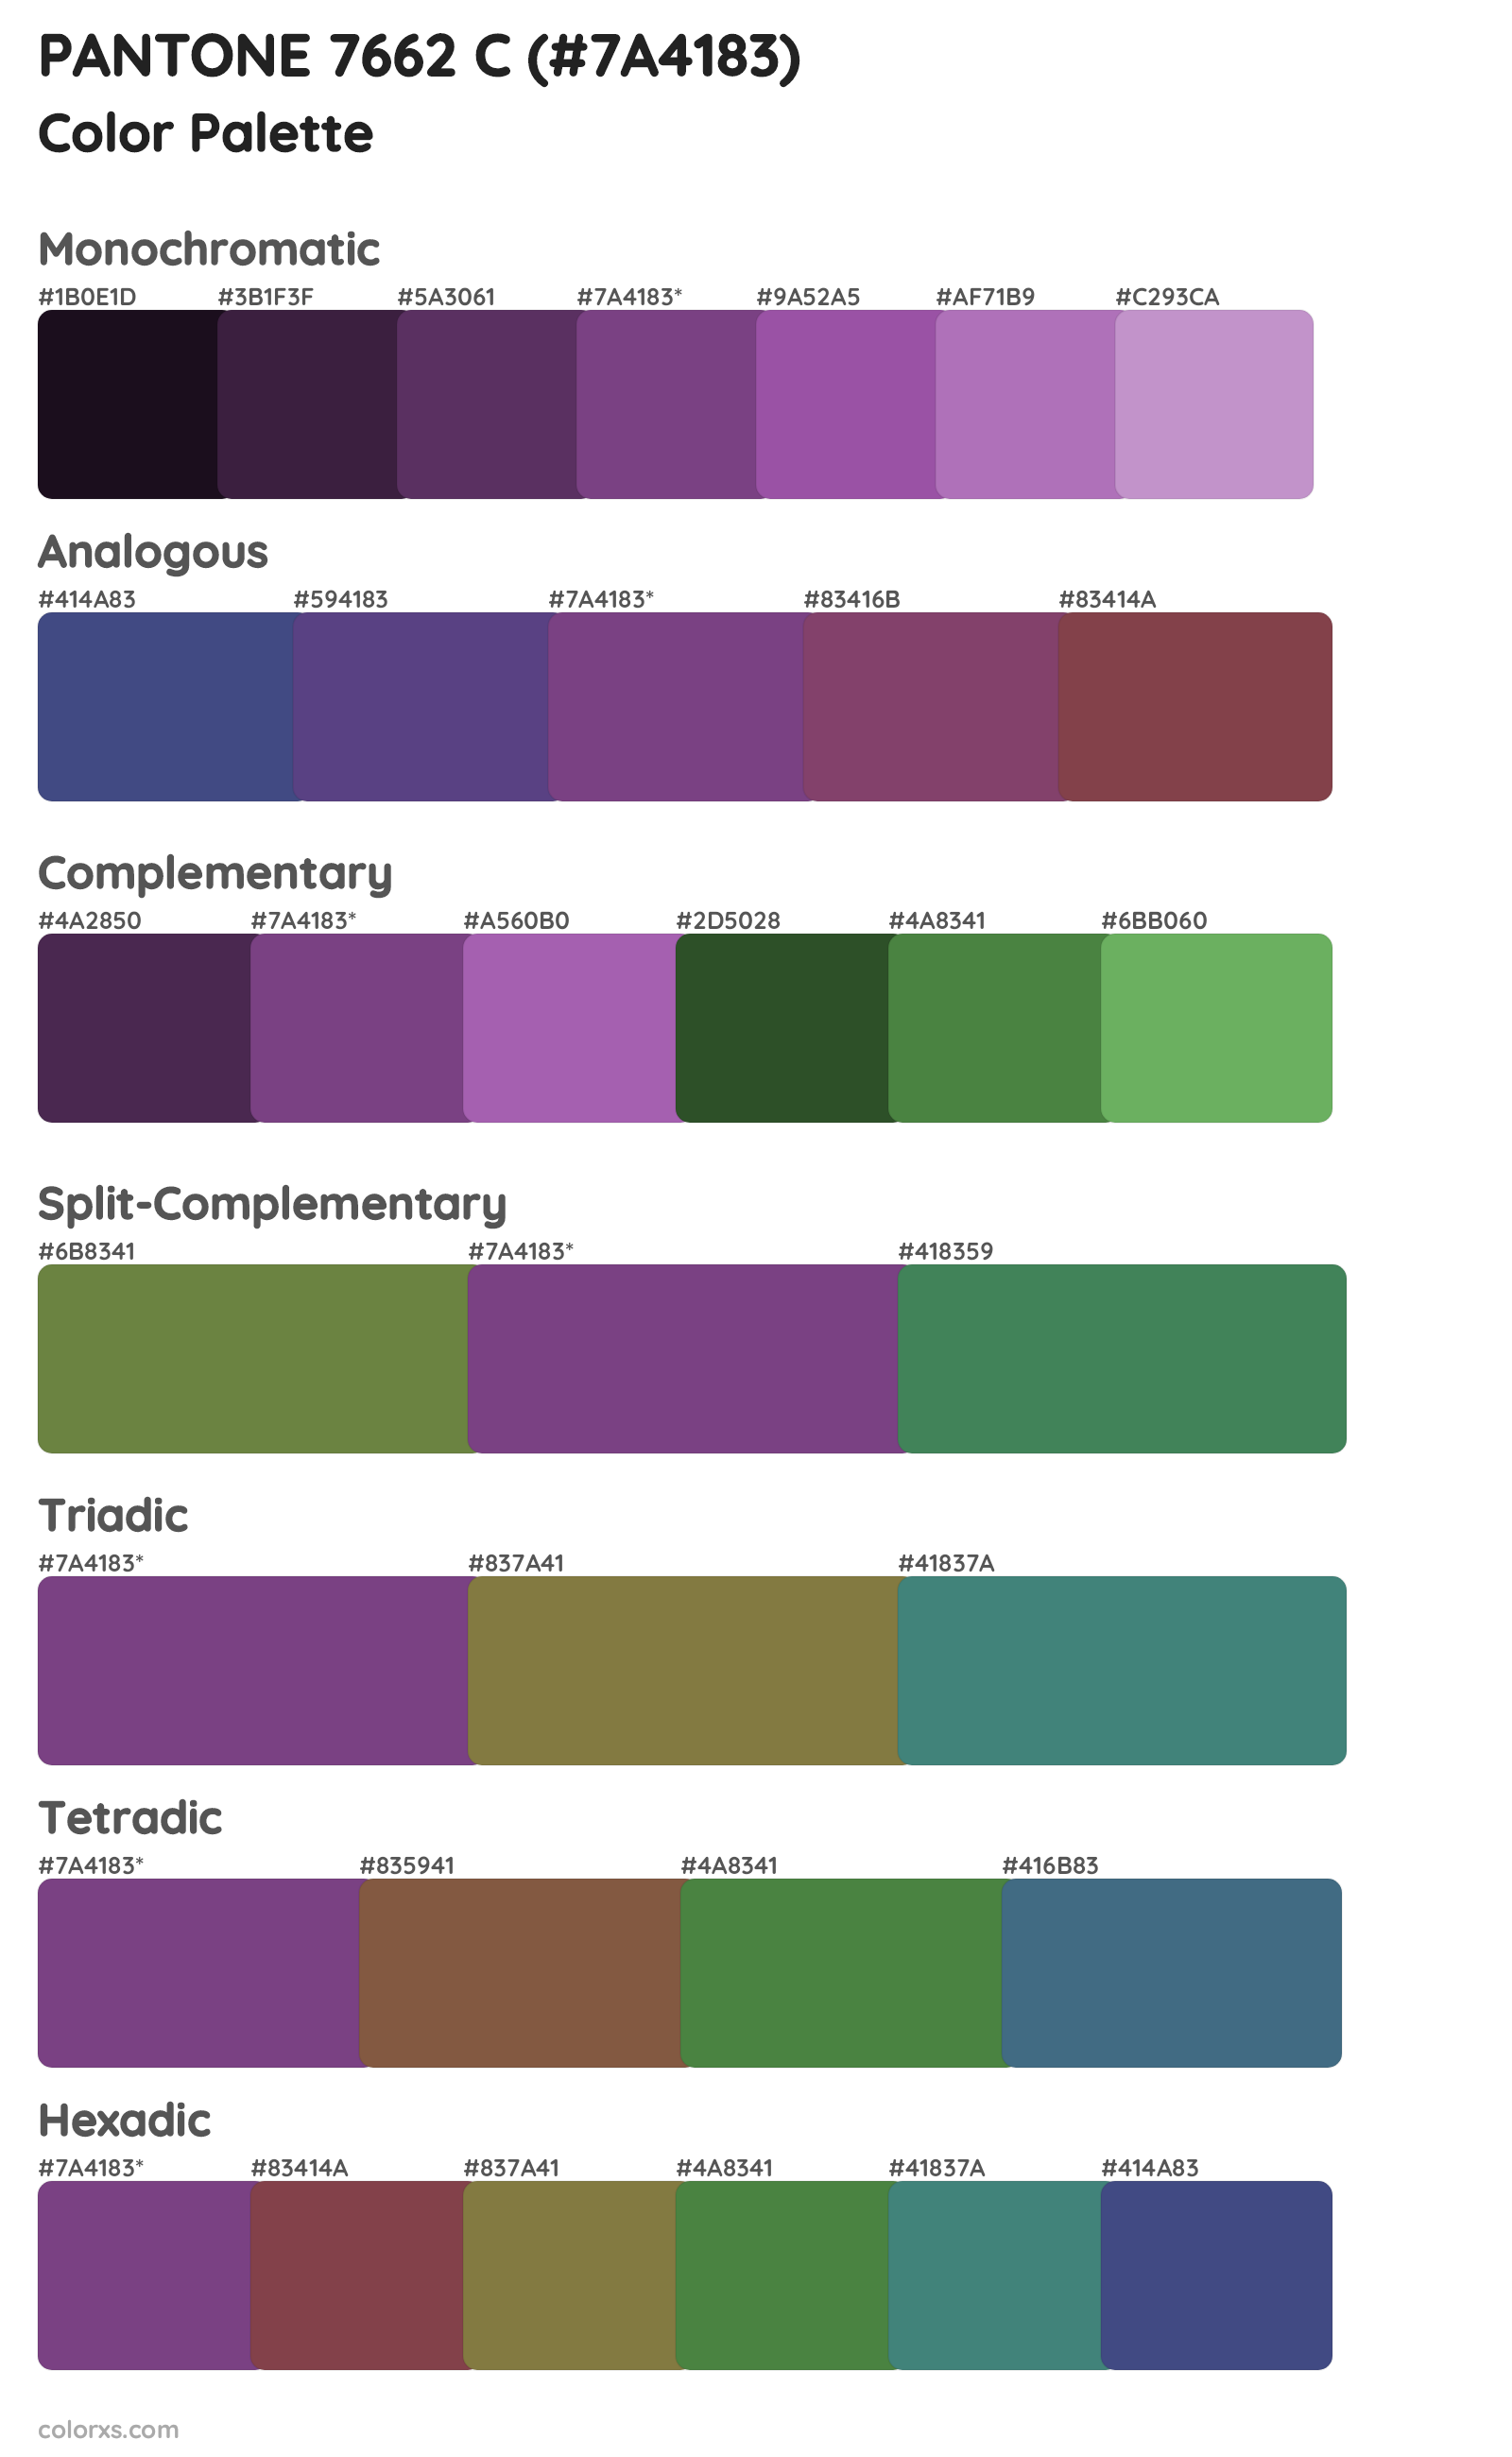 PANTONE 7662 C Color Scheme Palettes